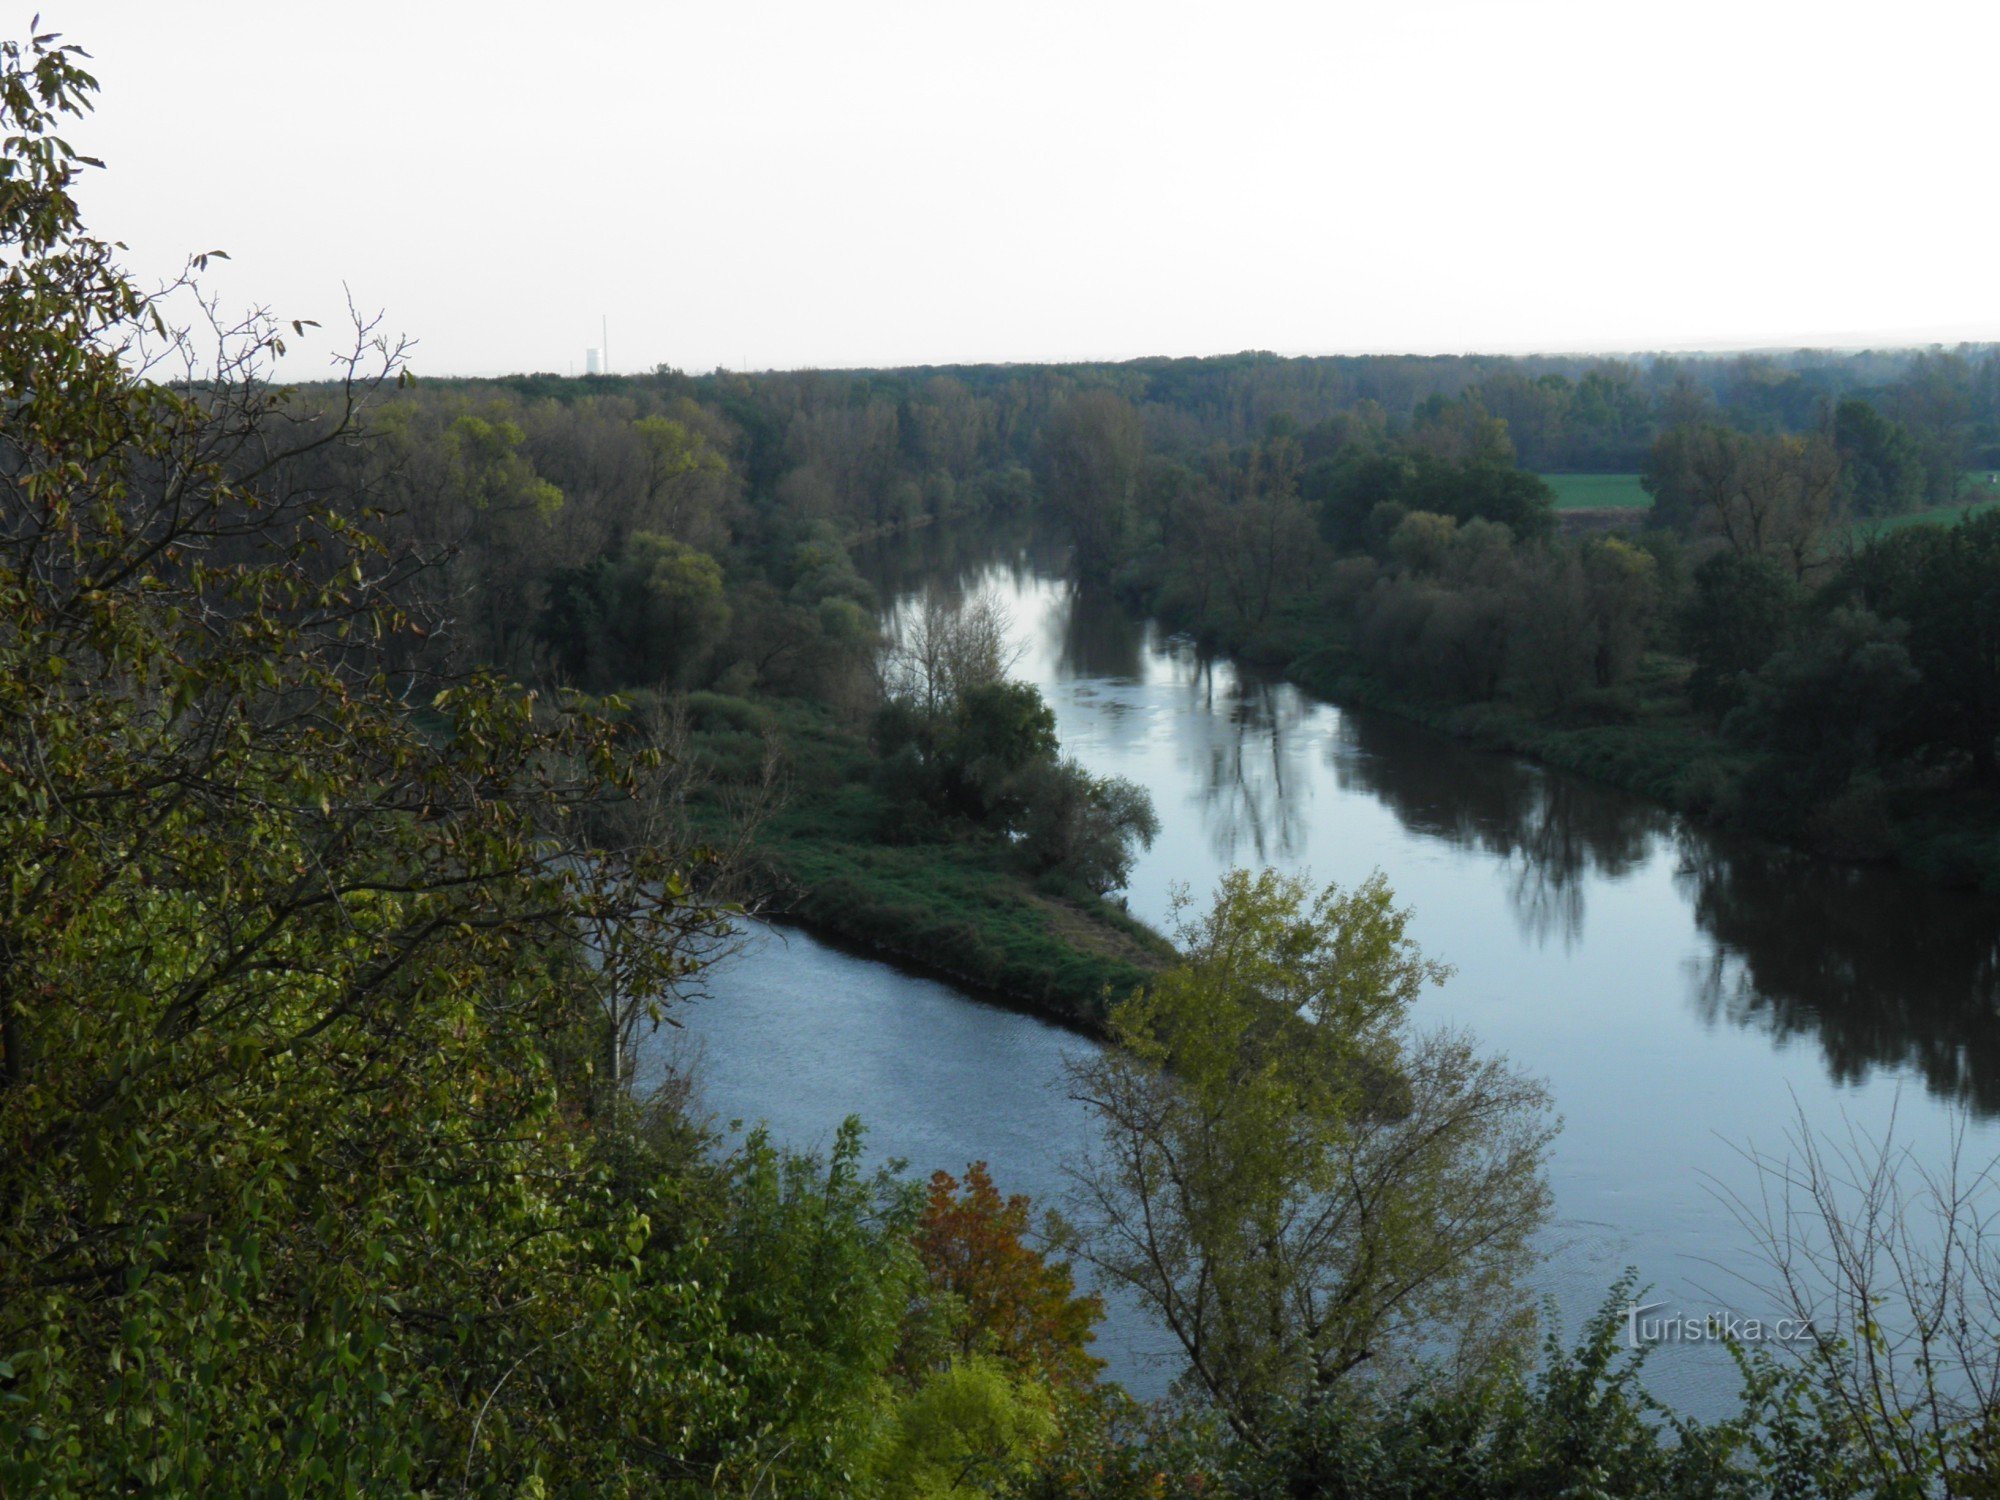 Sammanflödet av Elbe och Moldau.